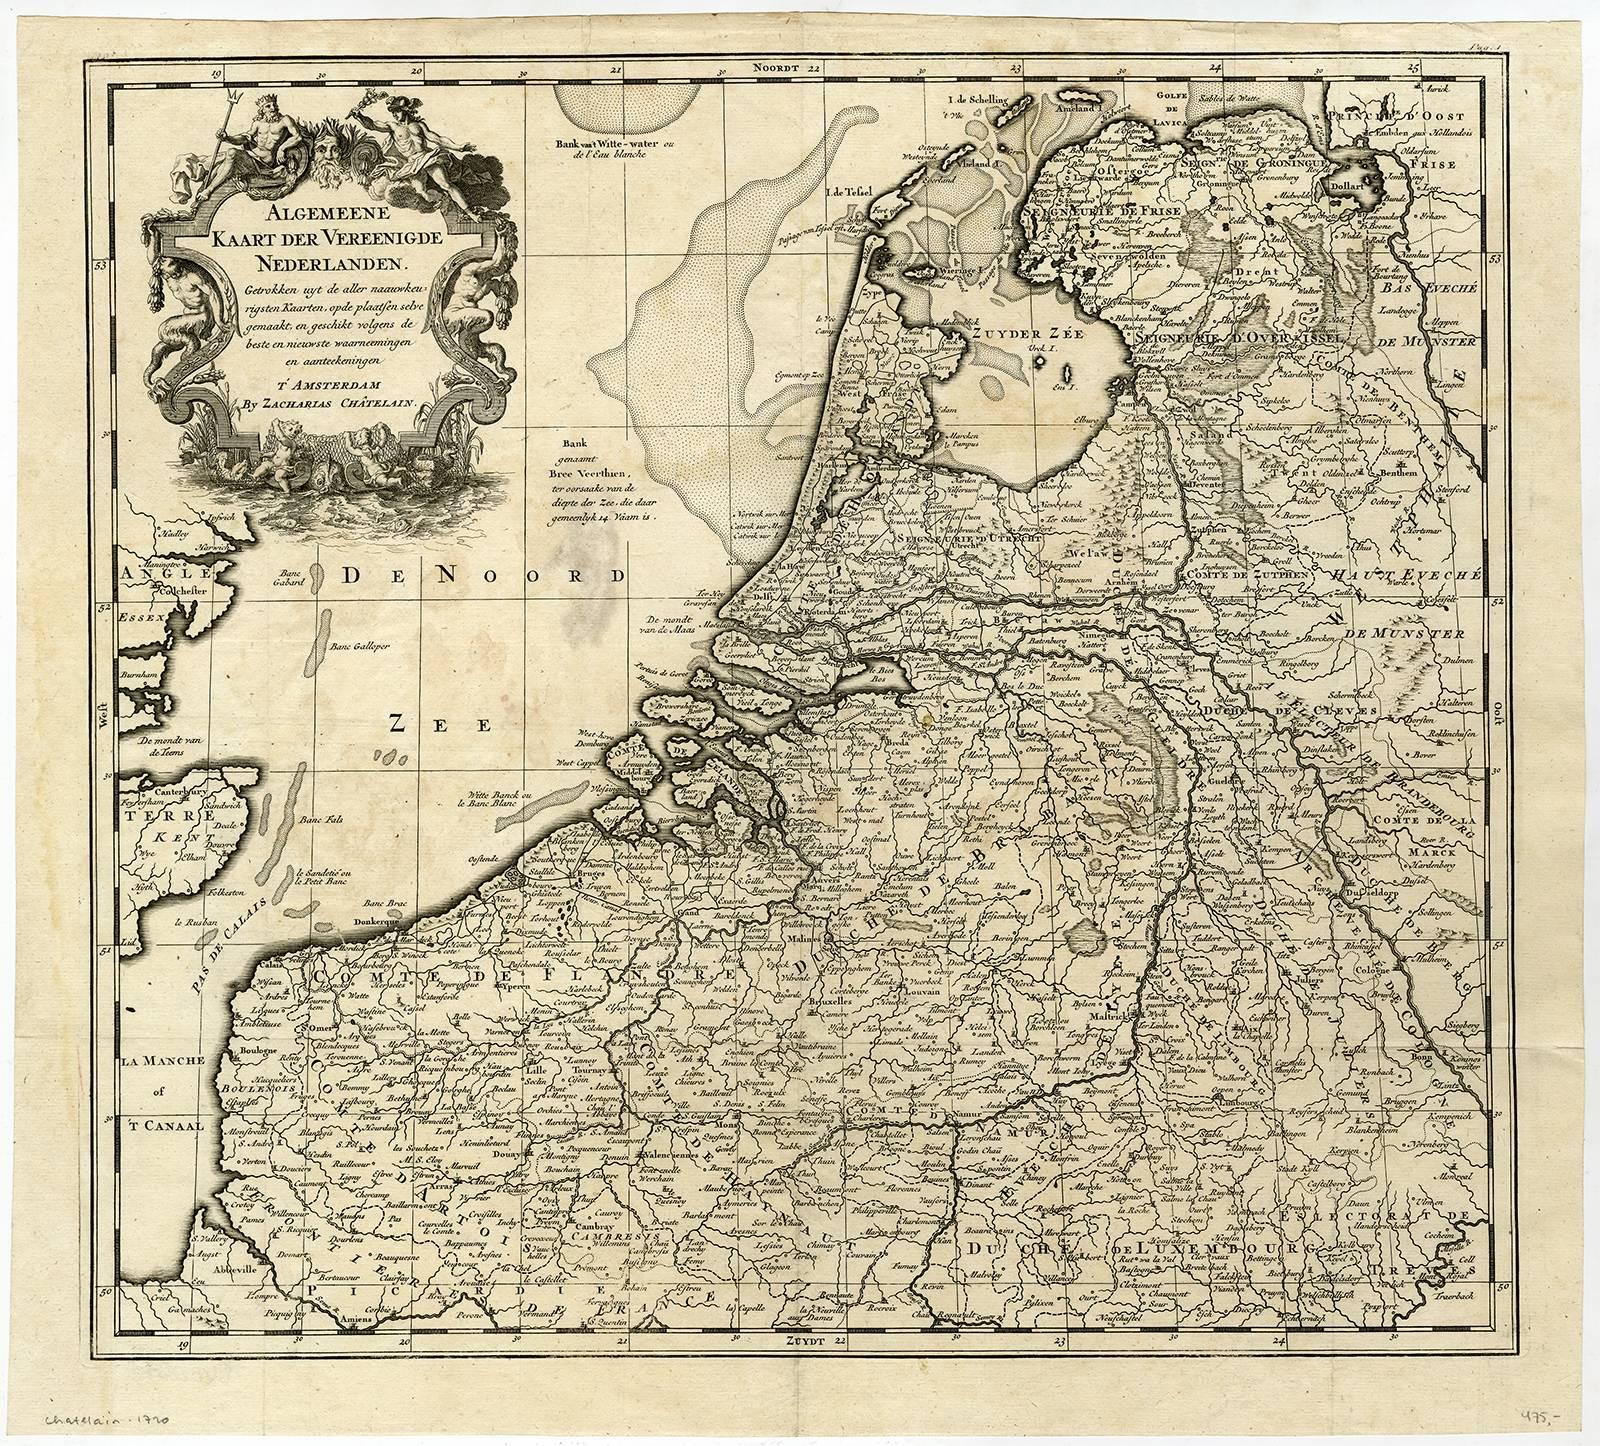 Zacharias Chatelain Print - Algemeene Kaart der Vereenigde Nederlanden.